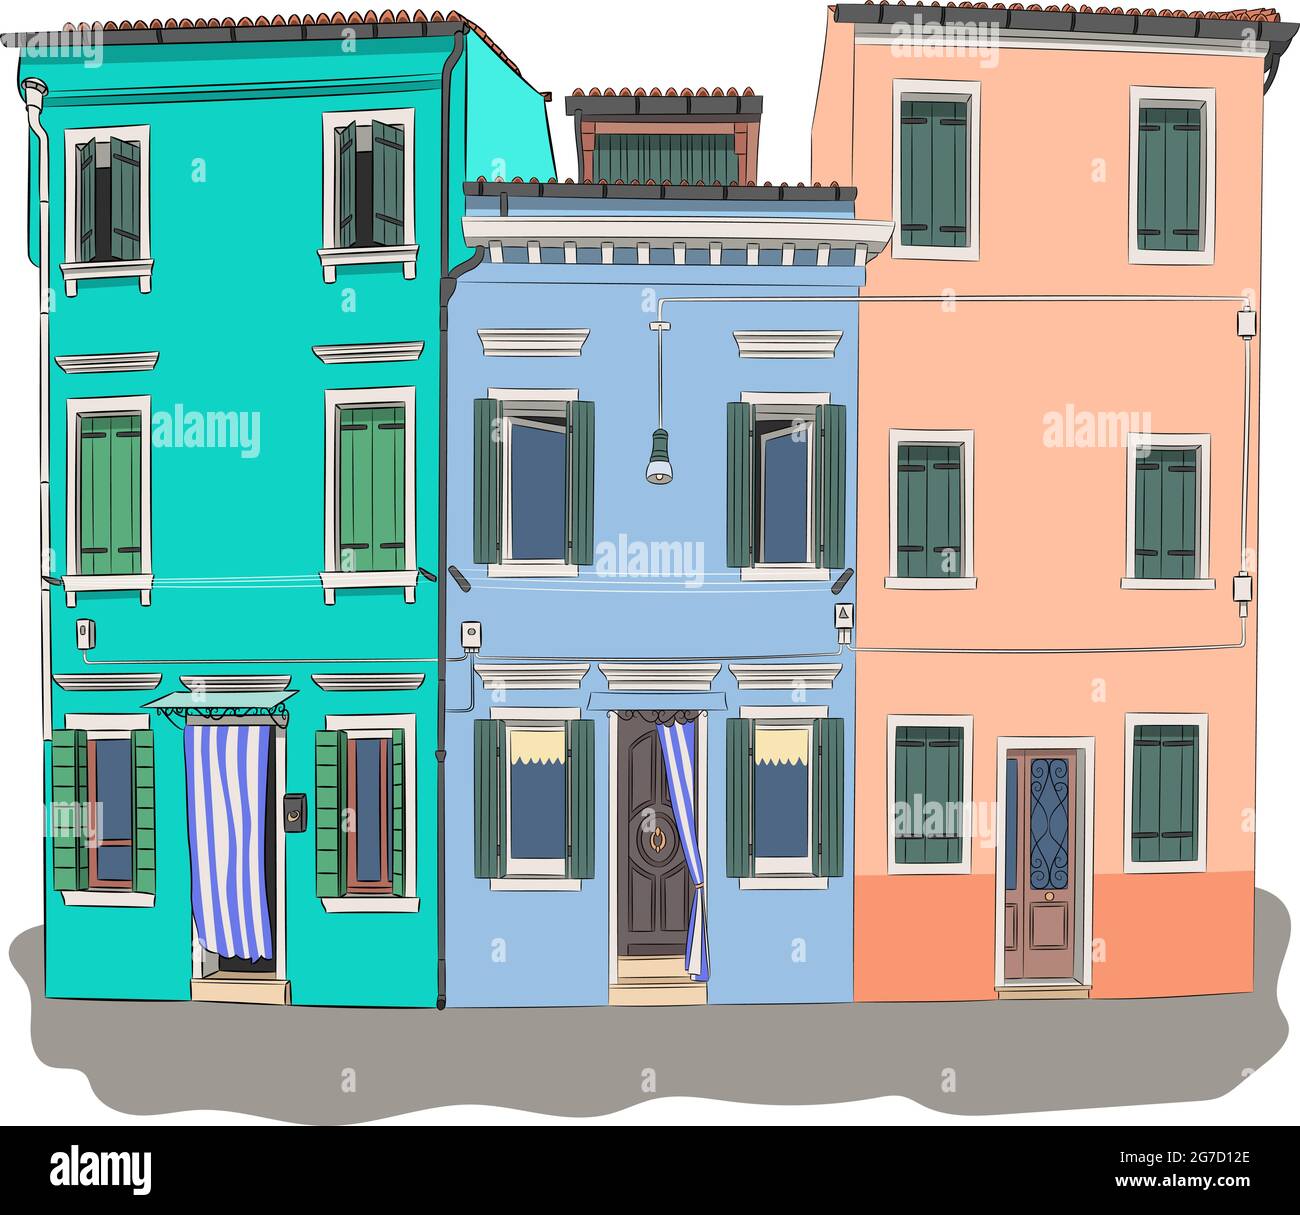 Farbenfrohe, helle Fassaden traditioneller Häuser auf der Insel Burano. Venedig. Italien. Stock Vektor